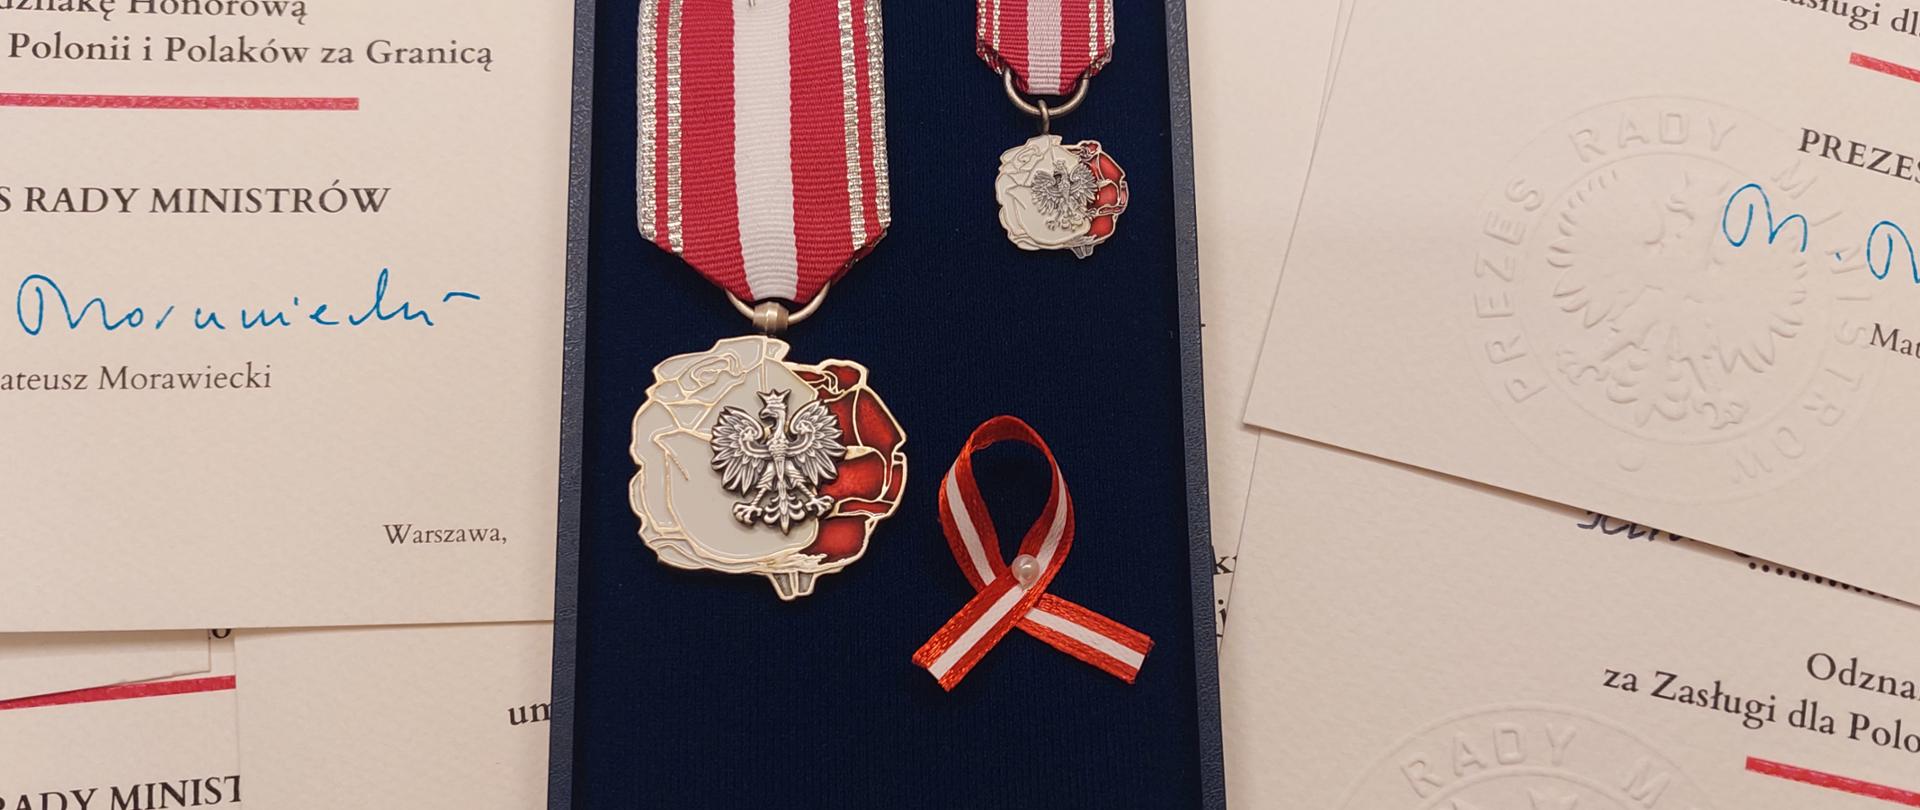 Odznaka Honorowa za Zasługi dla Polonii i Polaków za Granicą 